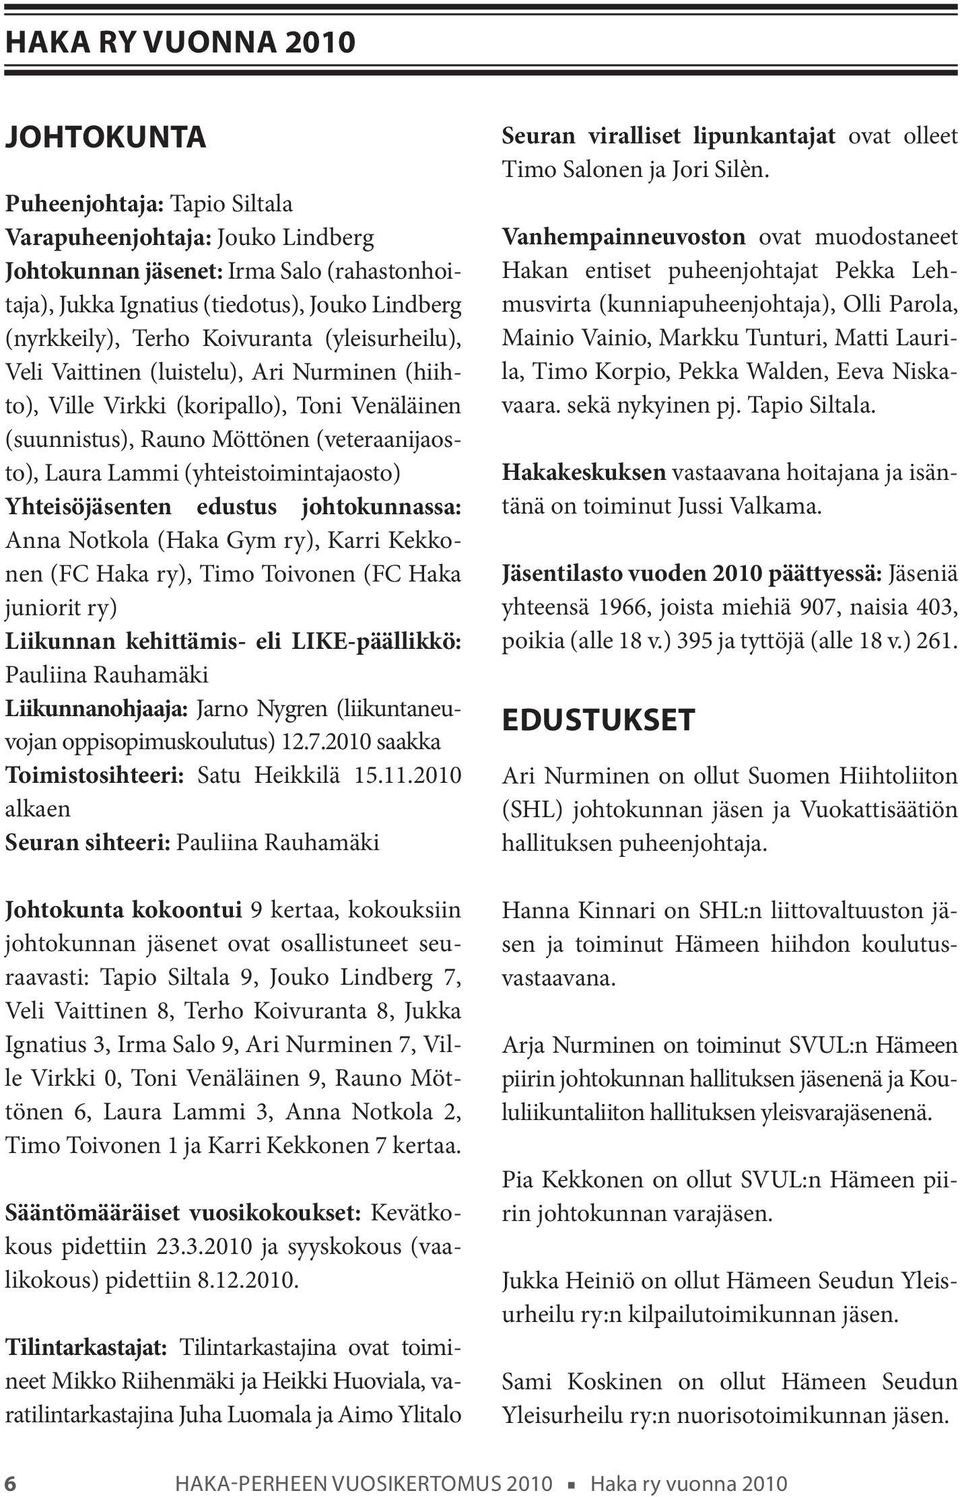 (yhteistoimintajaosto) Yhteisöjäsenten edustus johtokunnassa: Anna Notkola (Haka Gym ry), Karri Kekkonen (FC Haka ry), Timo Toivonen (FC Haka juniorit ry) Liikunnan kehittämis- eli LIKE-päällikkö: